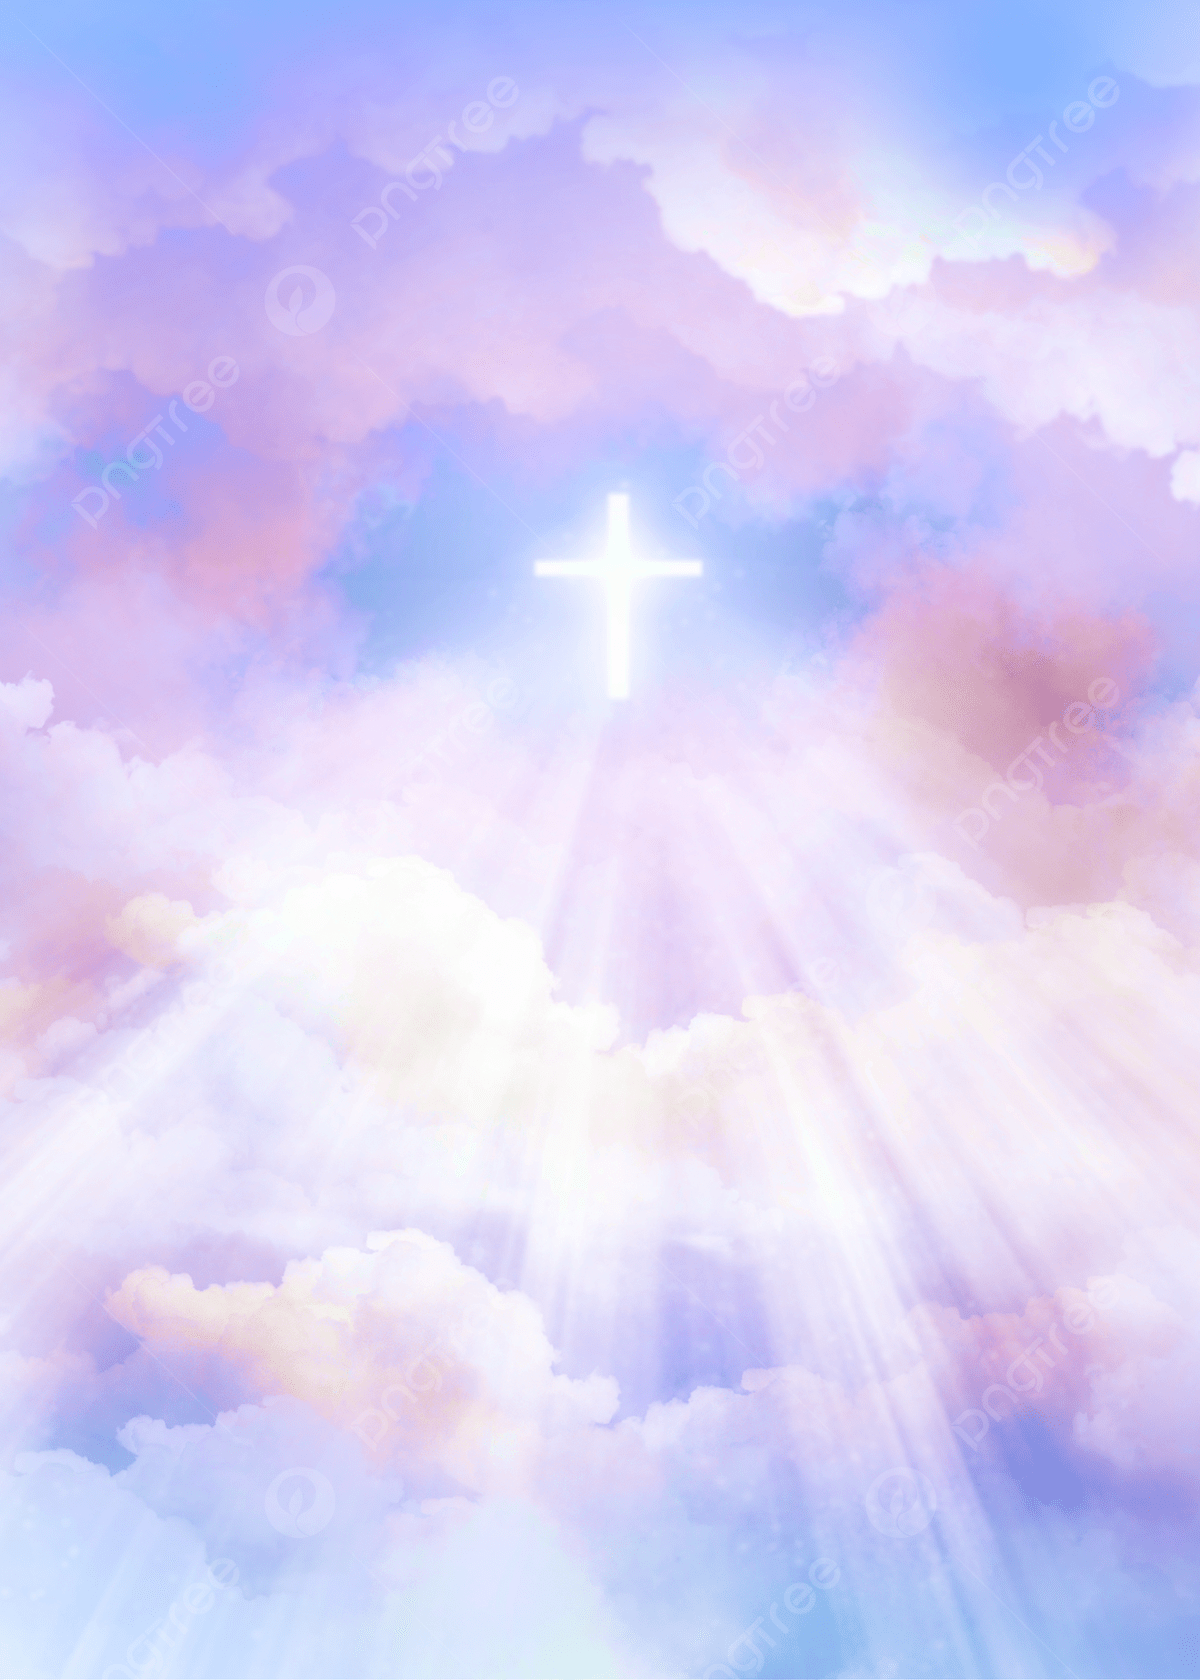 A shining cross in the sky - Cross